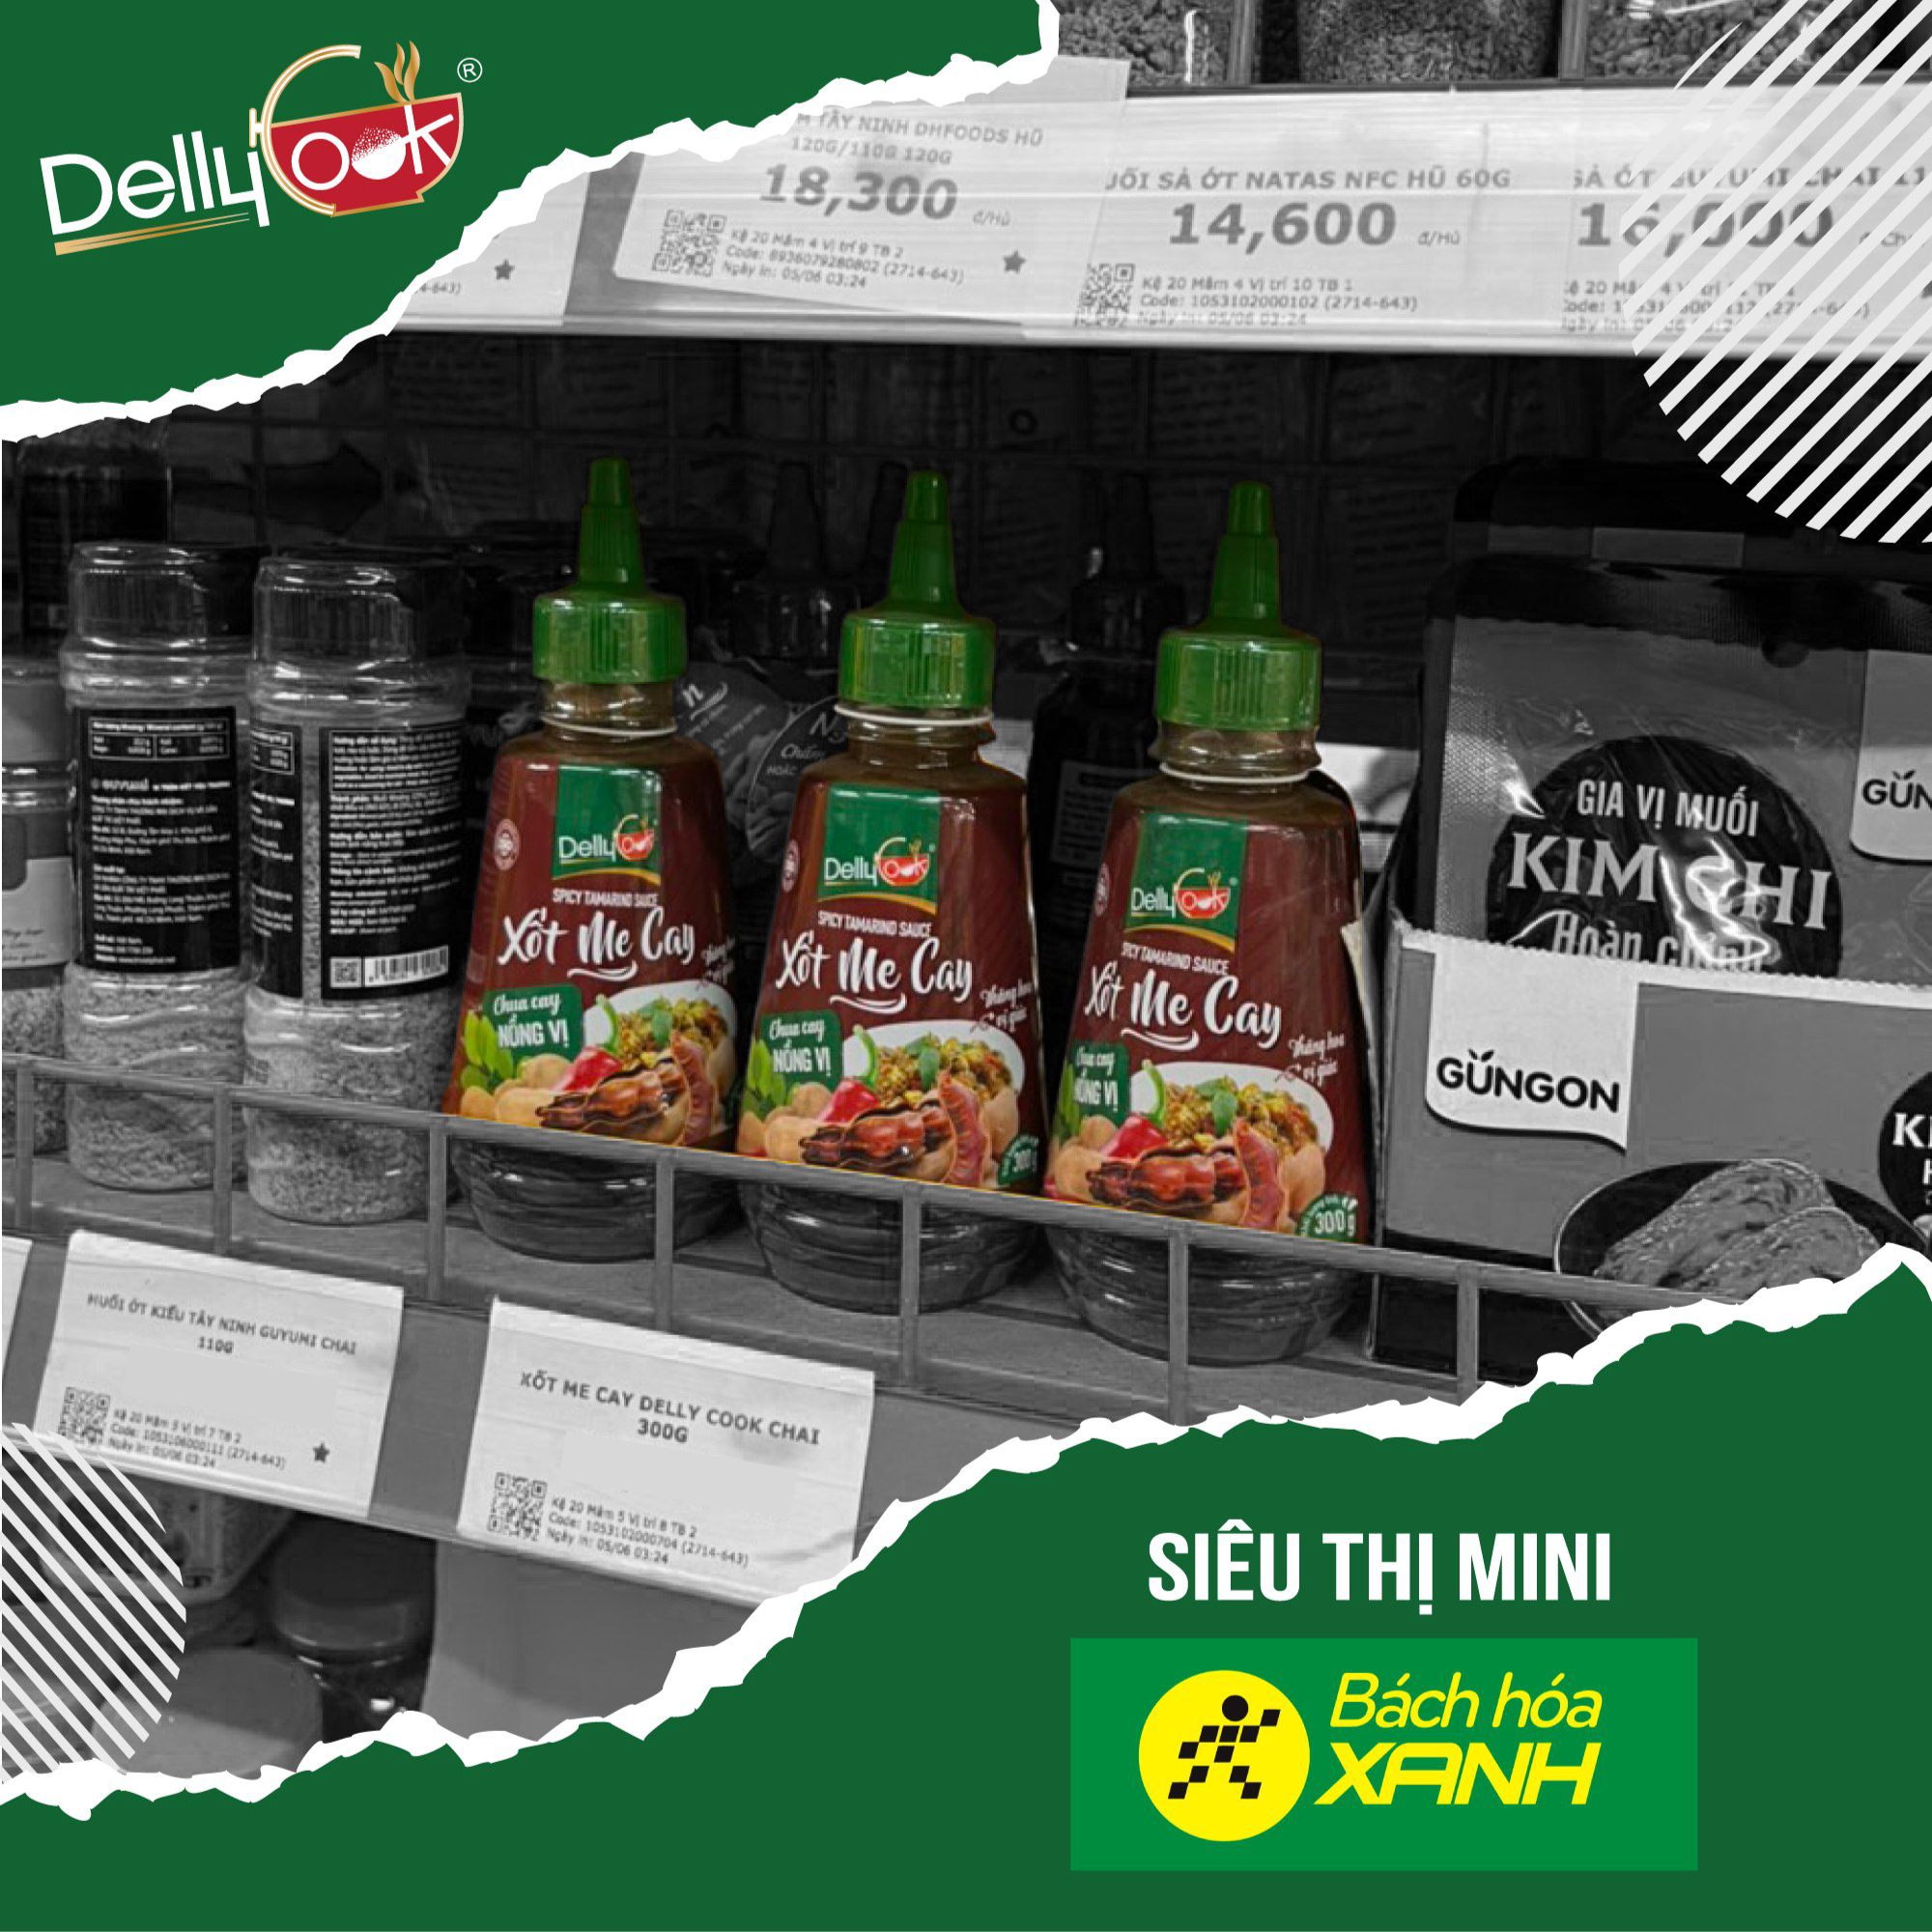 Xốt Me Cay Dellycook đã có mặt tại hàng loạt hệ thống các siêu thị và cửa hàng tiện lợi tại khắp Việt Nam